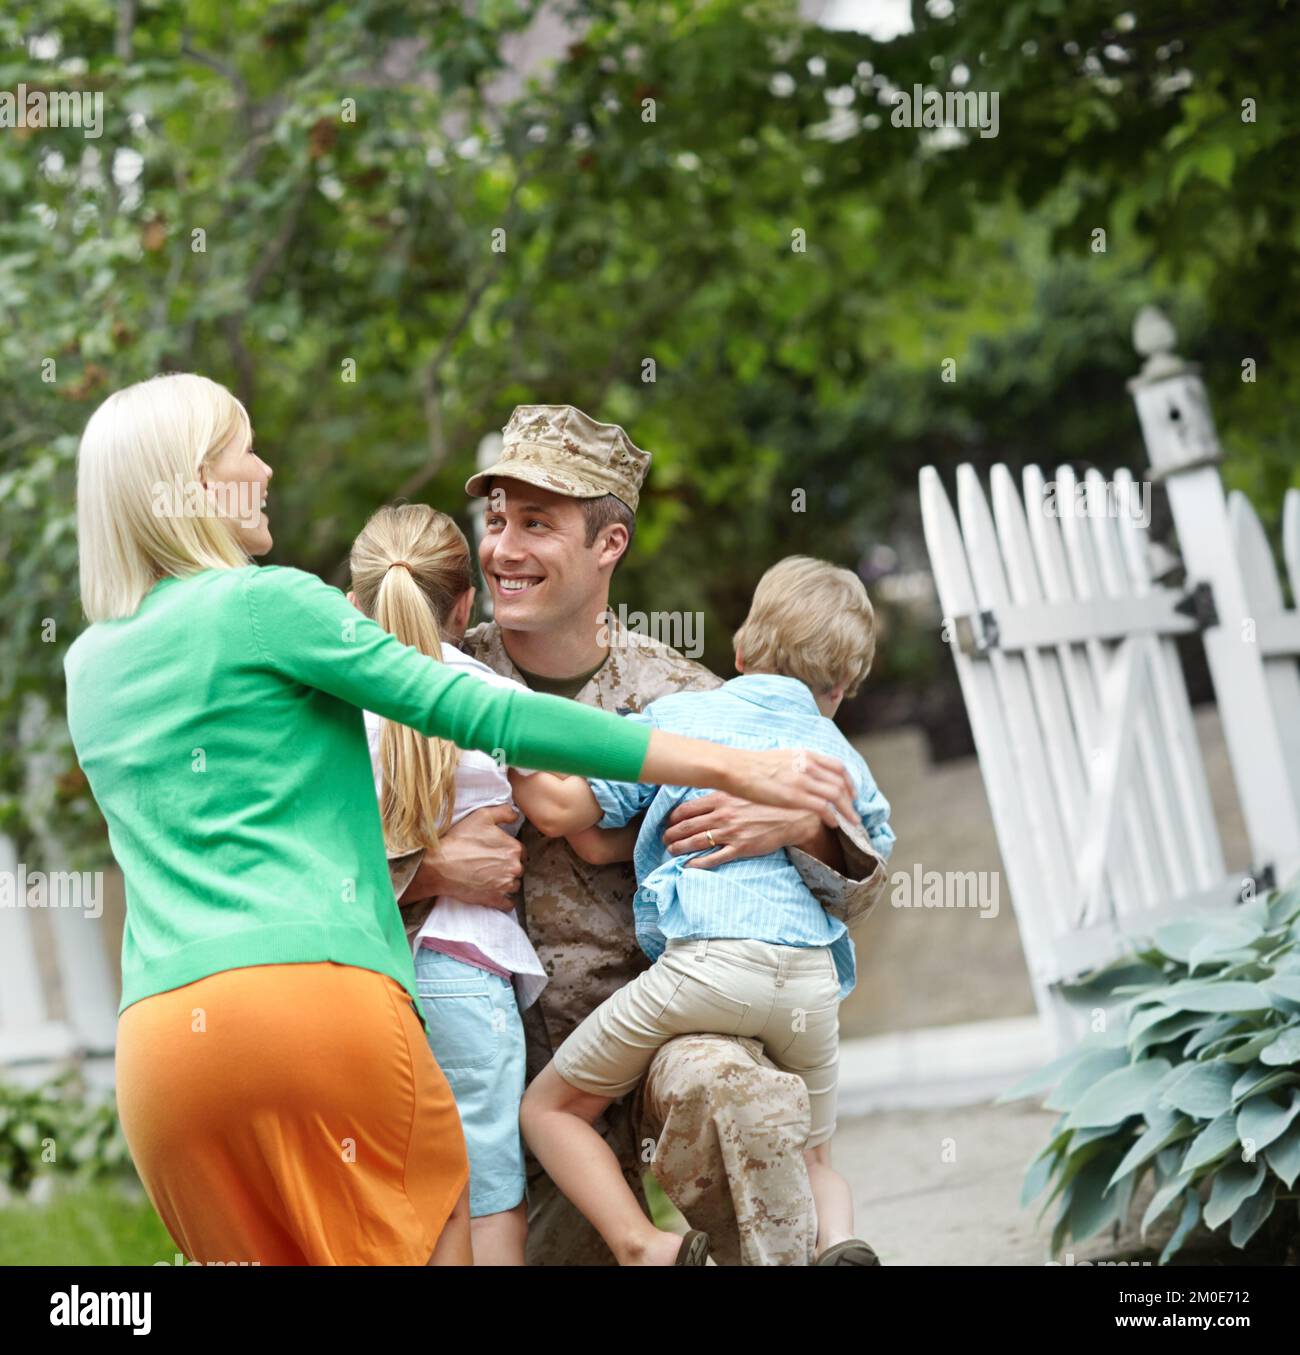 Bienvenue à la maison. Un père de l'armée étant accueilli par sa famille dans leur jardin. Banque D'Images